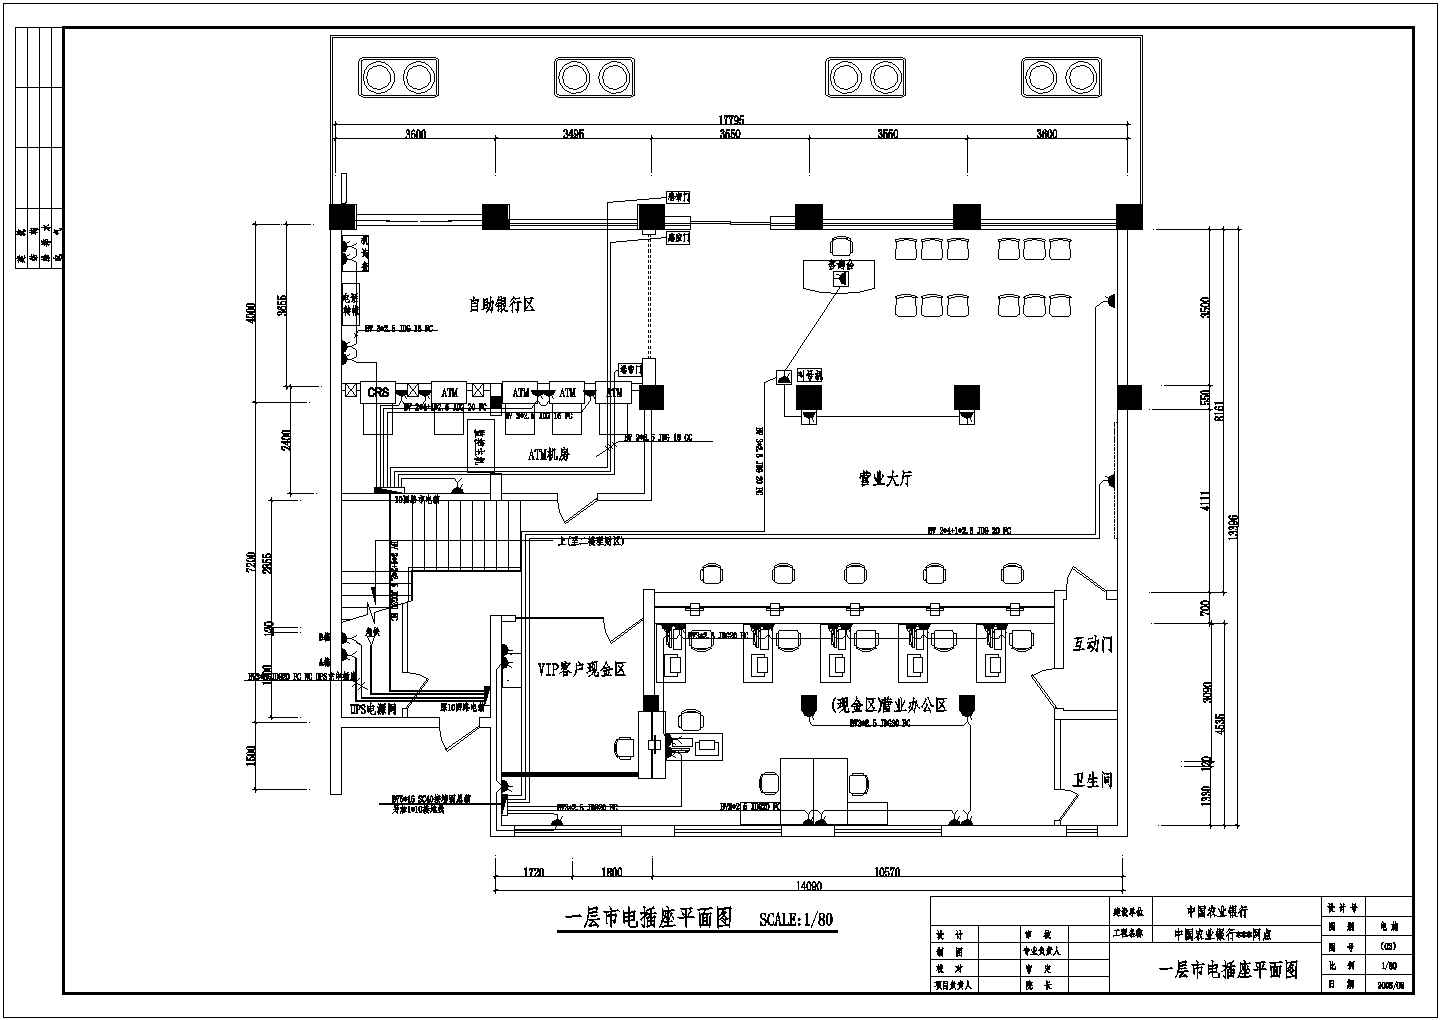 二层简易综合楼室内外装修电气（综合布线）设计图